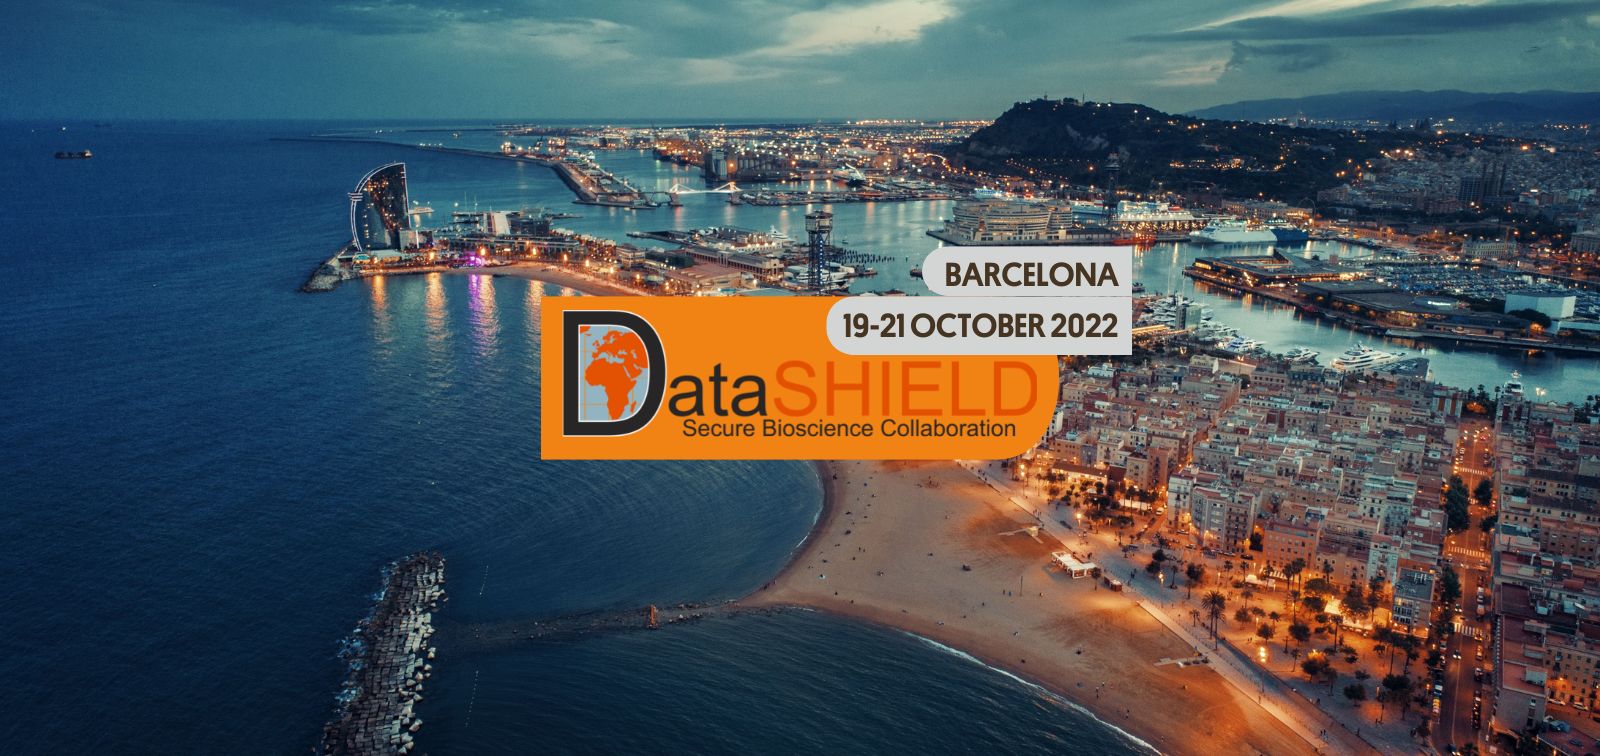 DataSHIELD Barcelona 2022